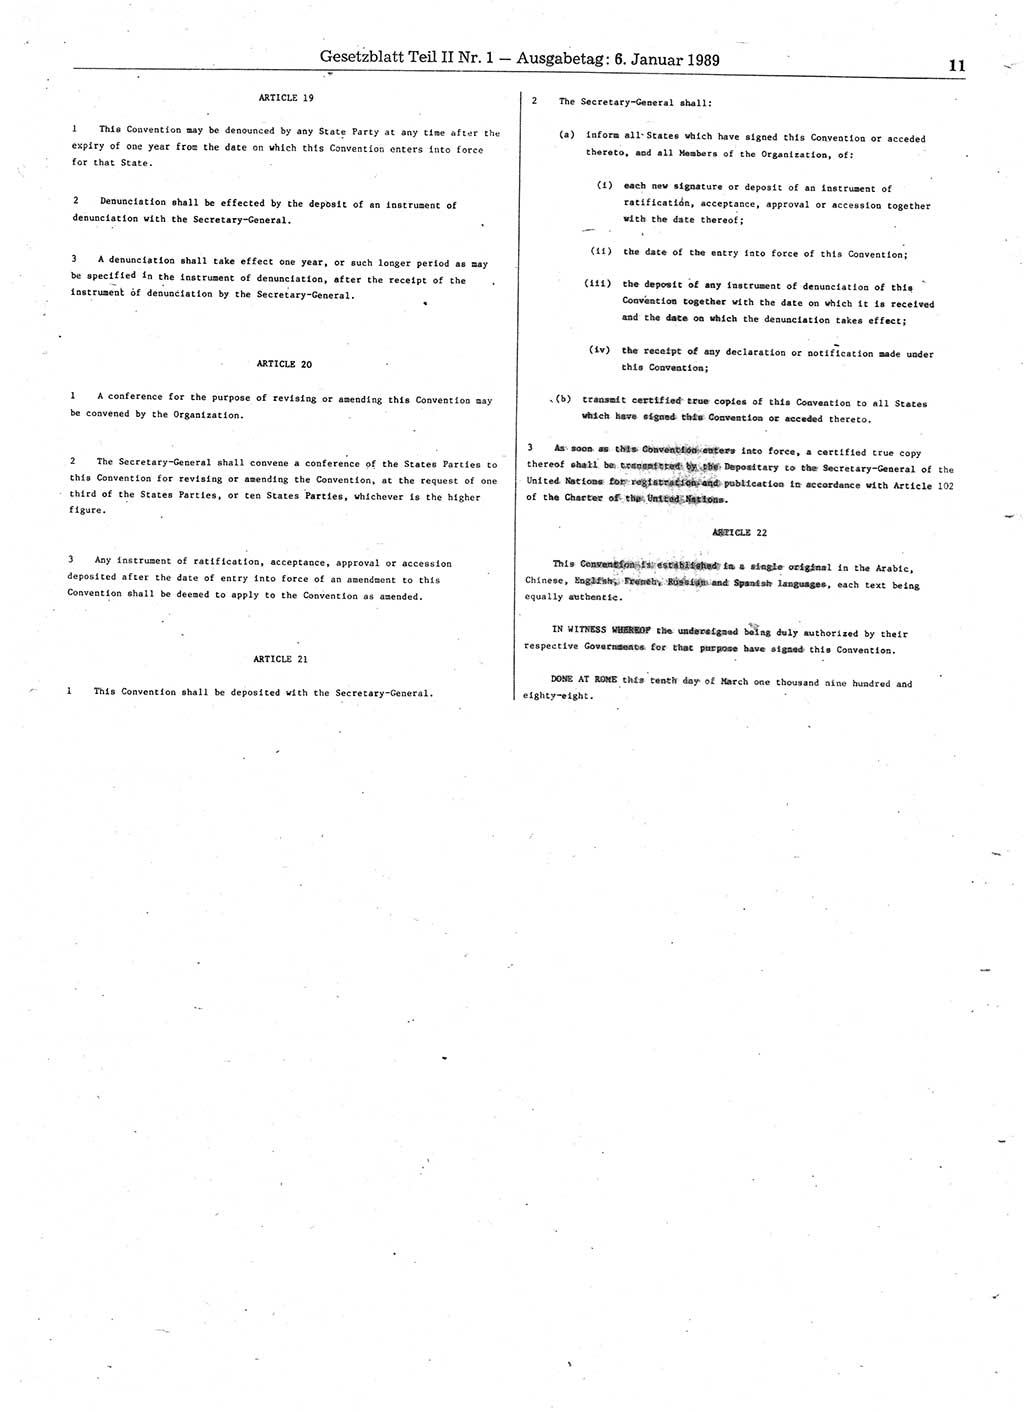 Gesetzblatt (GBl.) der Deutschen Demokratischen Republik (DDR) Teil ⅠⅠ 1989, Seite 11 (GBl. DDR ⅠⅠ 1989, S. 11)